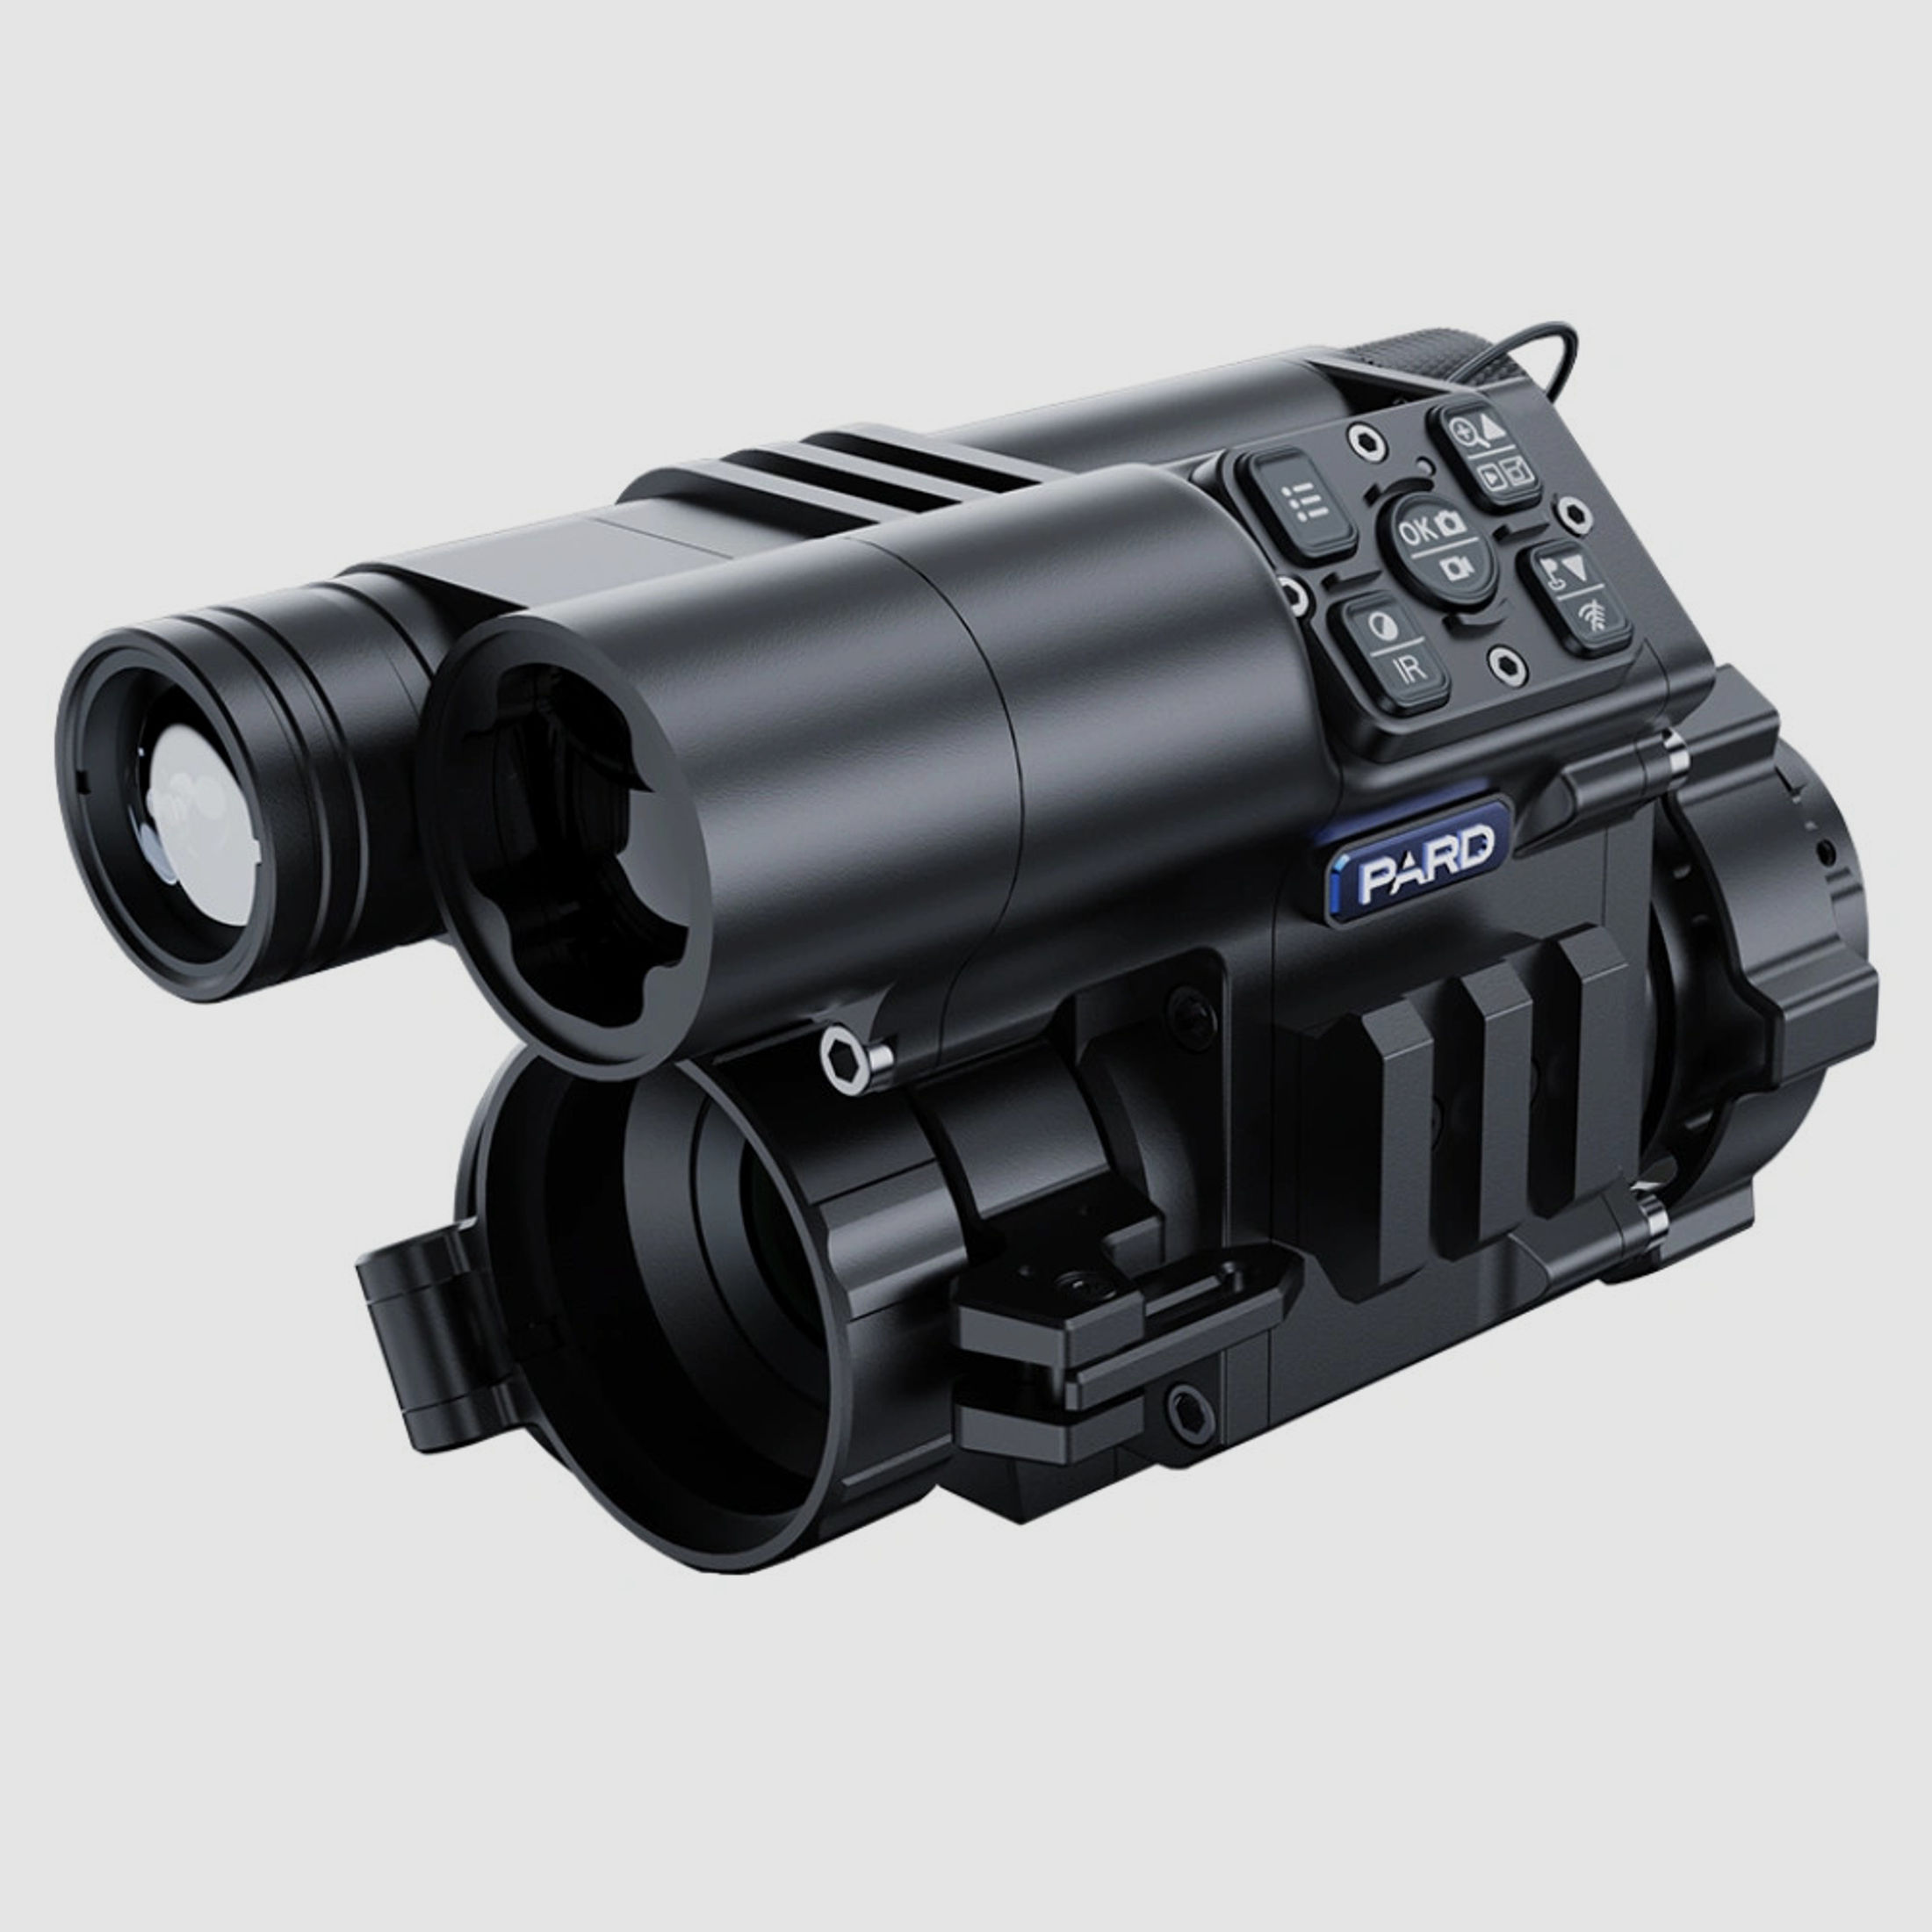 PARD FD1 Nachtsicht 3 in 1 Vorsatz, Monokular & Zielfernrohr - 940 nm mit LRF Lieferumfang ohne Adapter